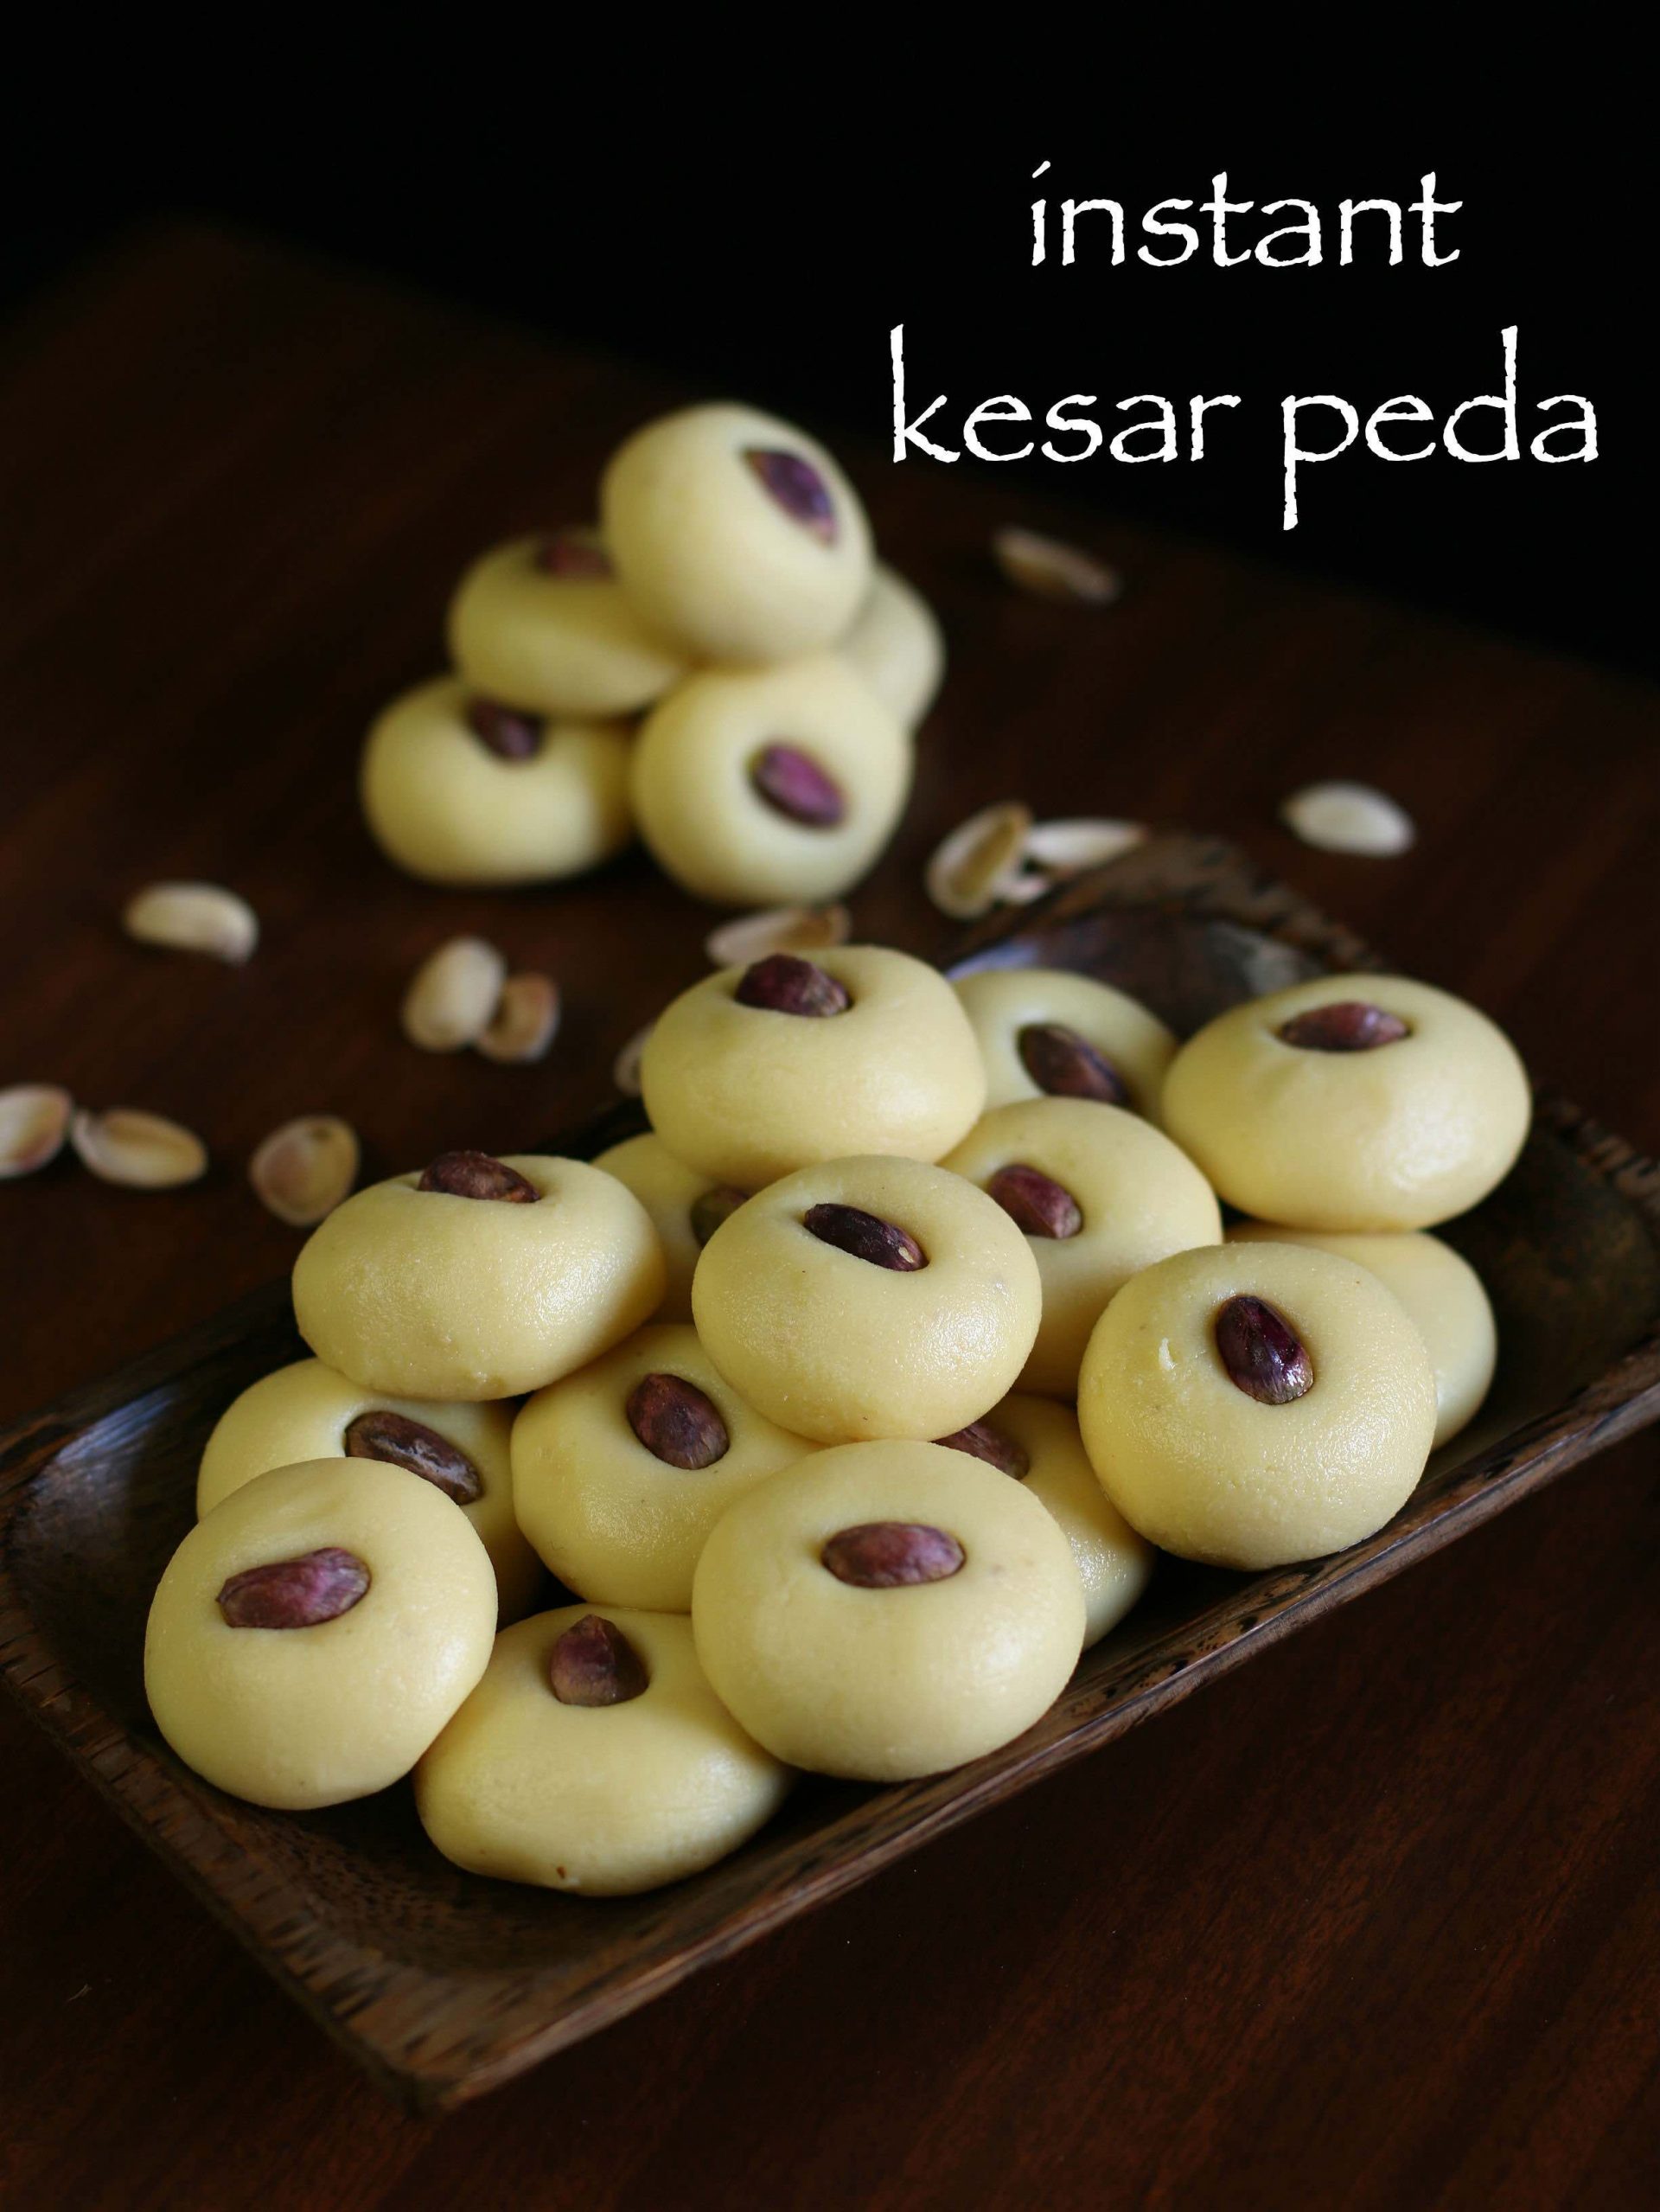 peda recipe | instant kesar peda recipe | kesar milk peda with milkmaid